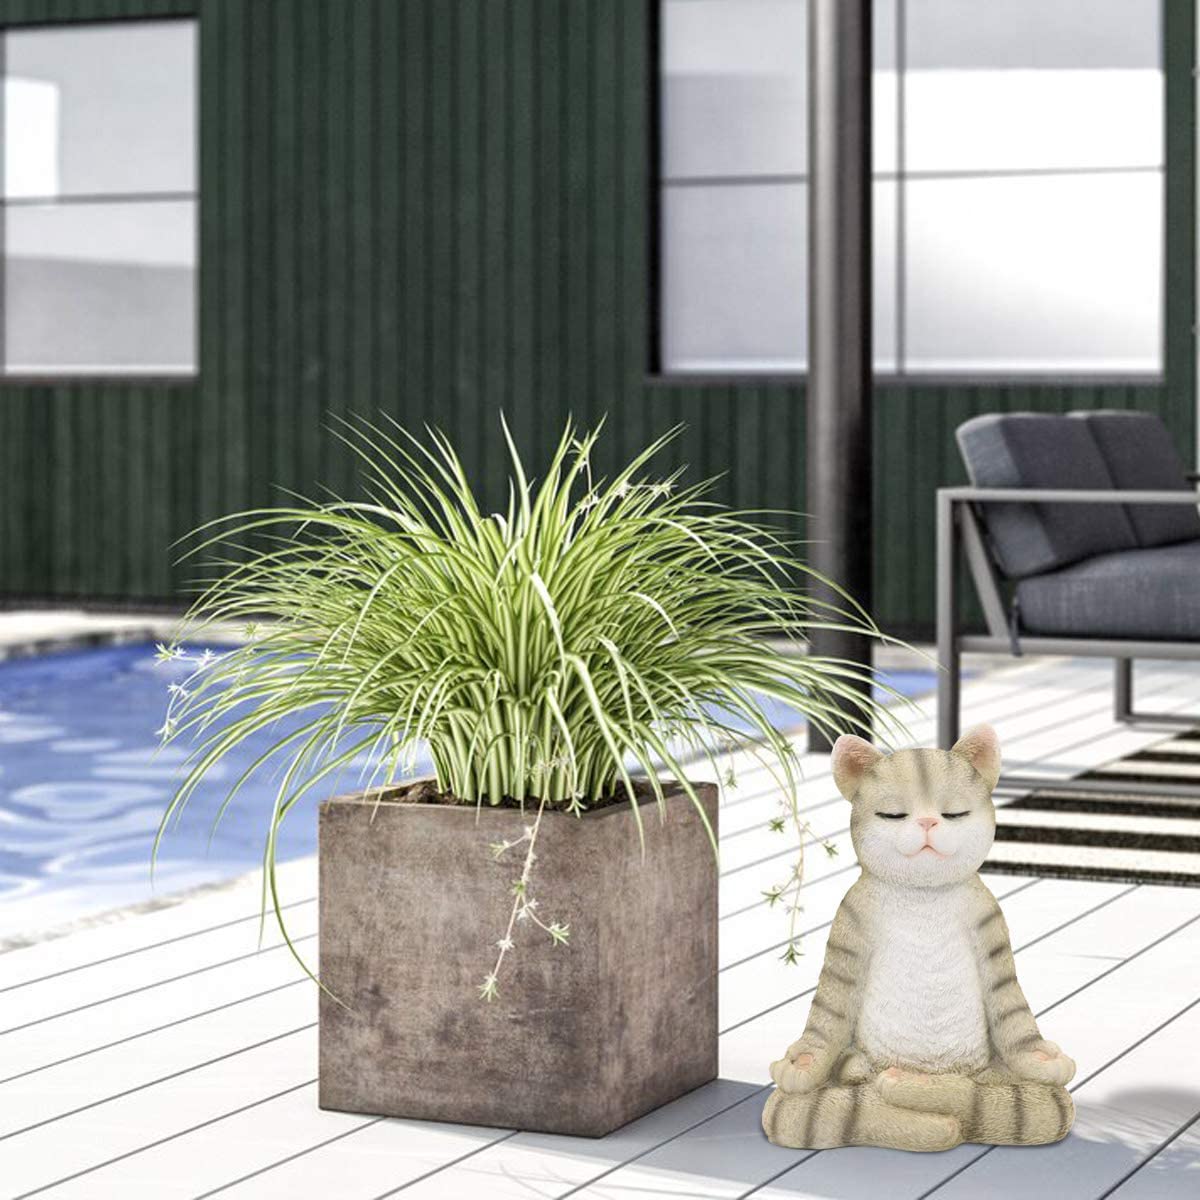 Meditating Zen Garden Cat Statue Figurine - Indoor/Outdoor Garden Cat Sculpture for Home,Garden,Patio, Deck,Porch Yard Art or Lawn Decoration,8.7" H(Gray Cat) - image 5 of 7